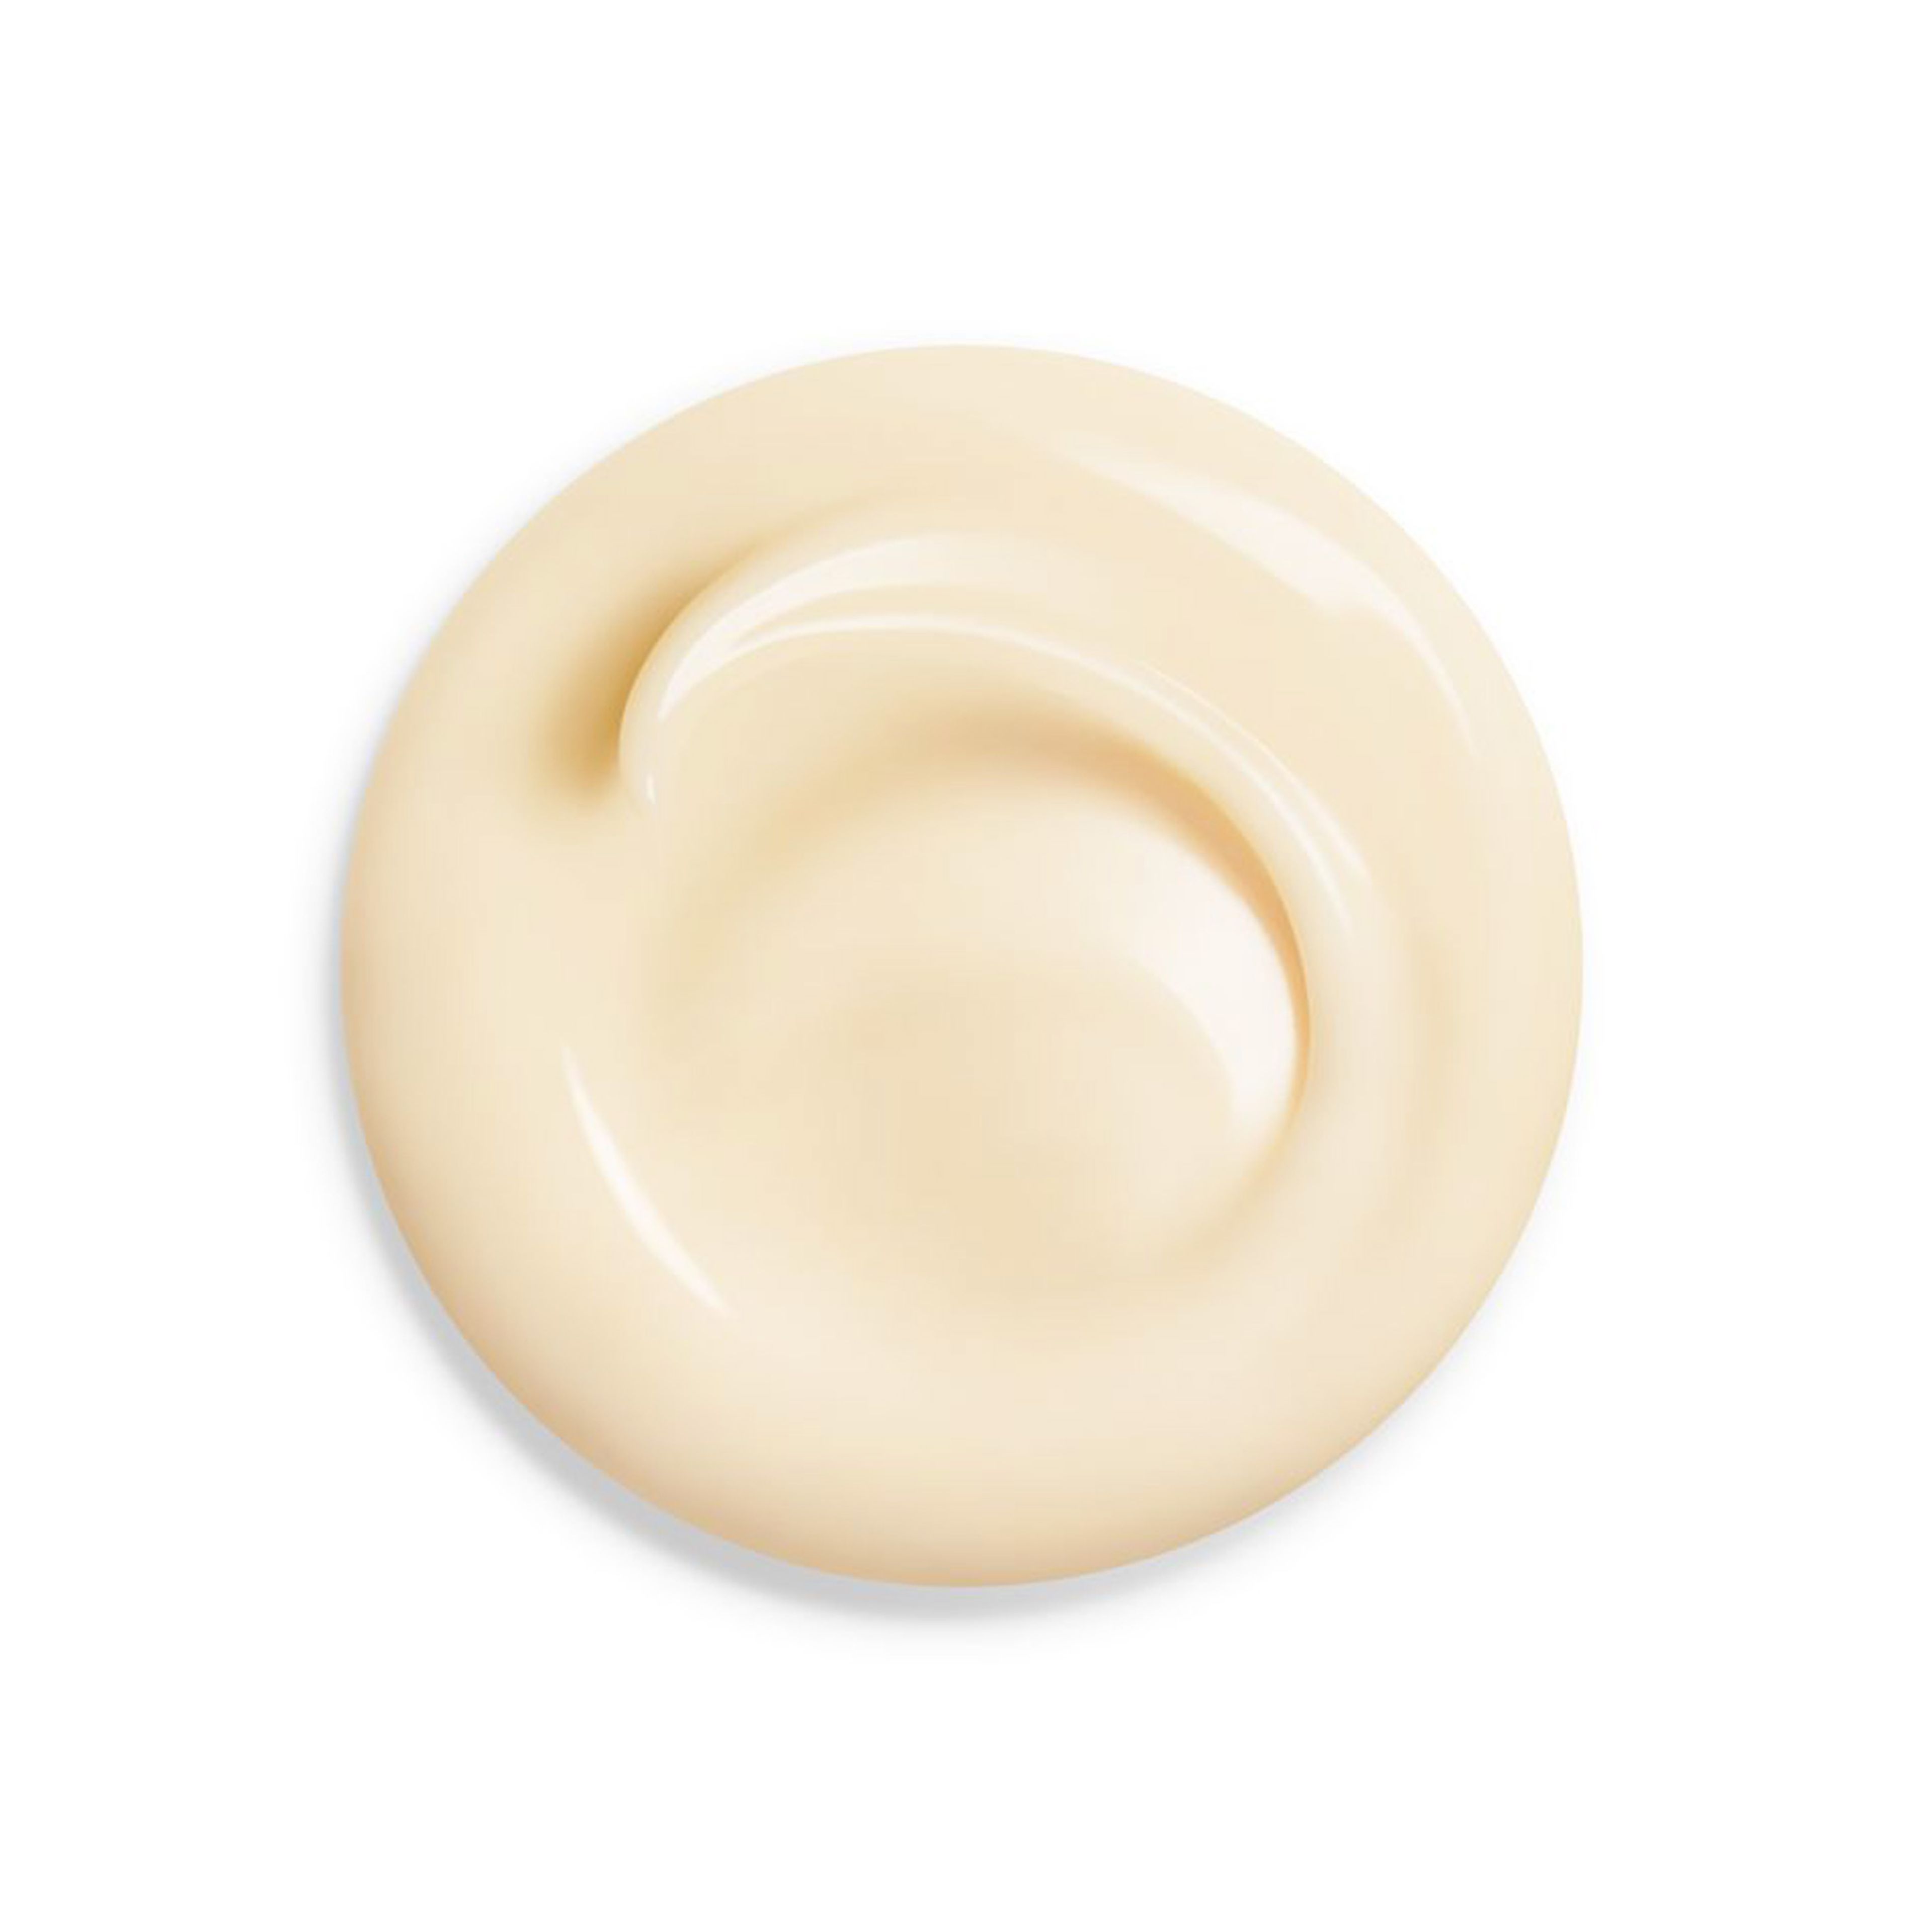 Shiseido Wrinkle Smoothing Cream 2